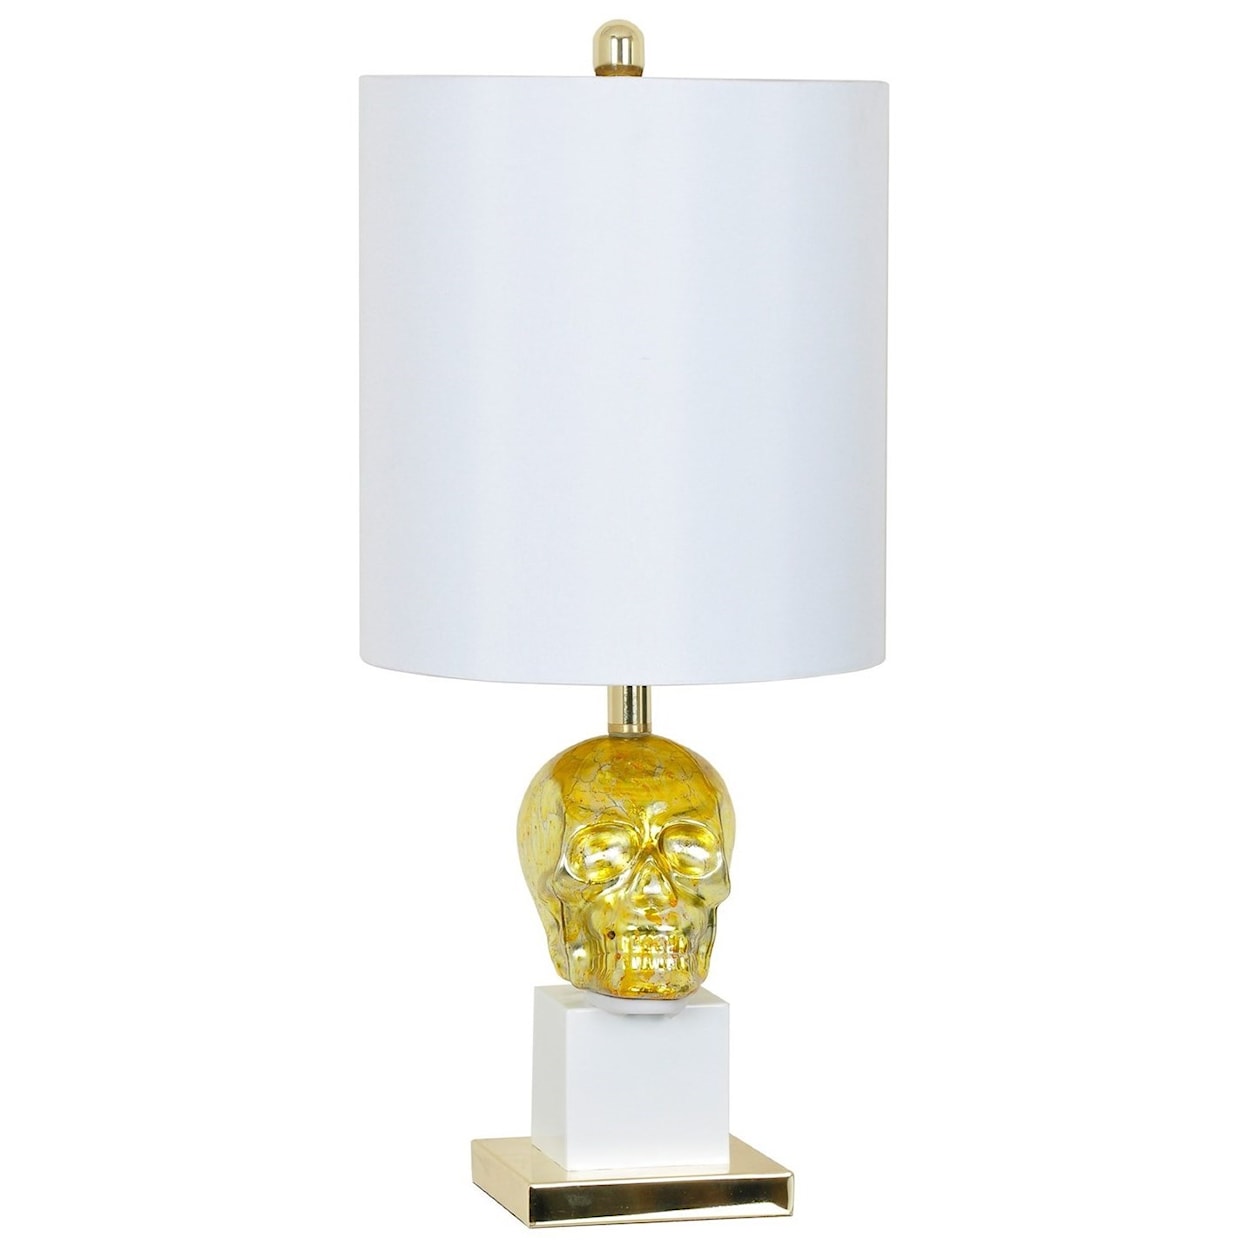 Crestview Collection Lighting Golden Skull Table Lamp